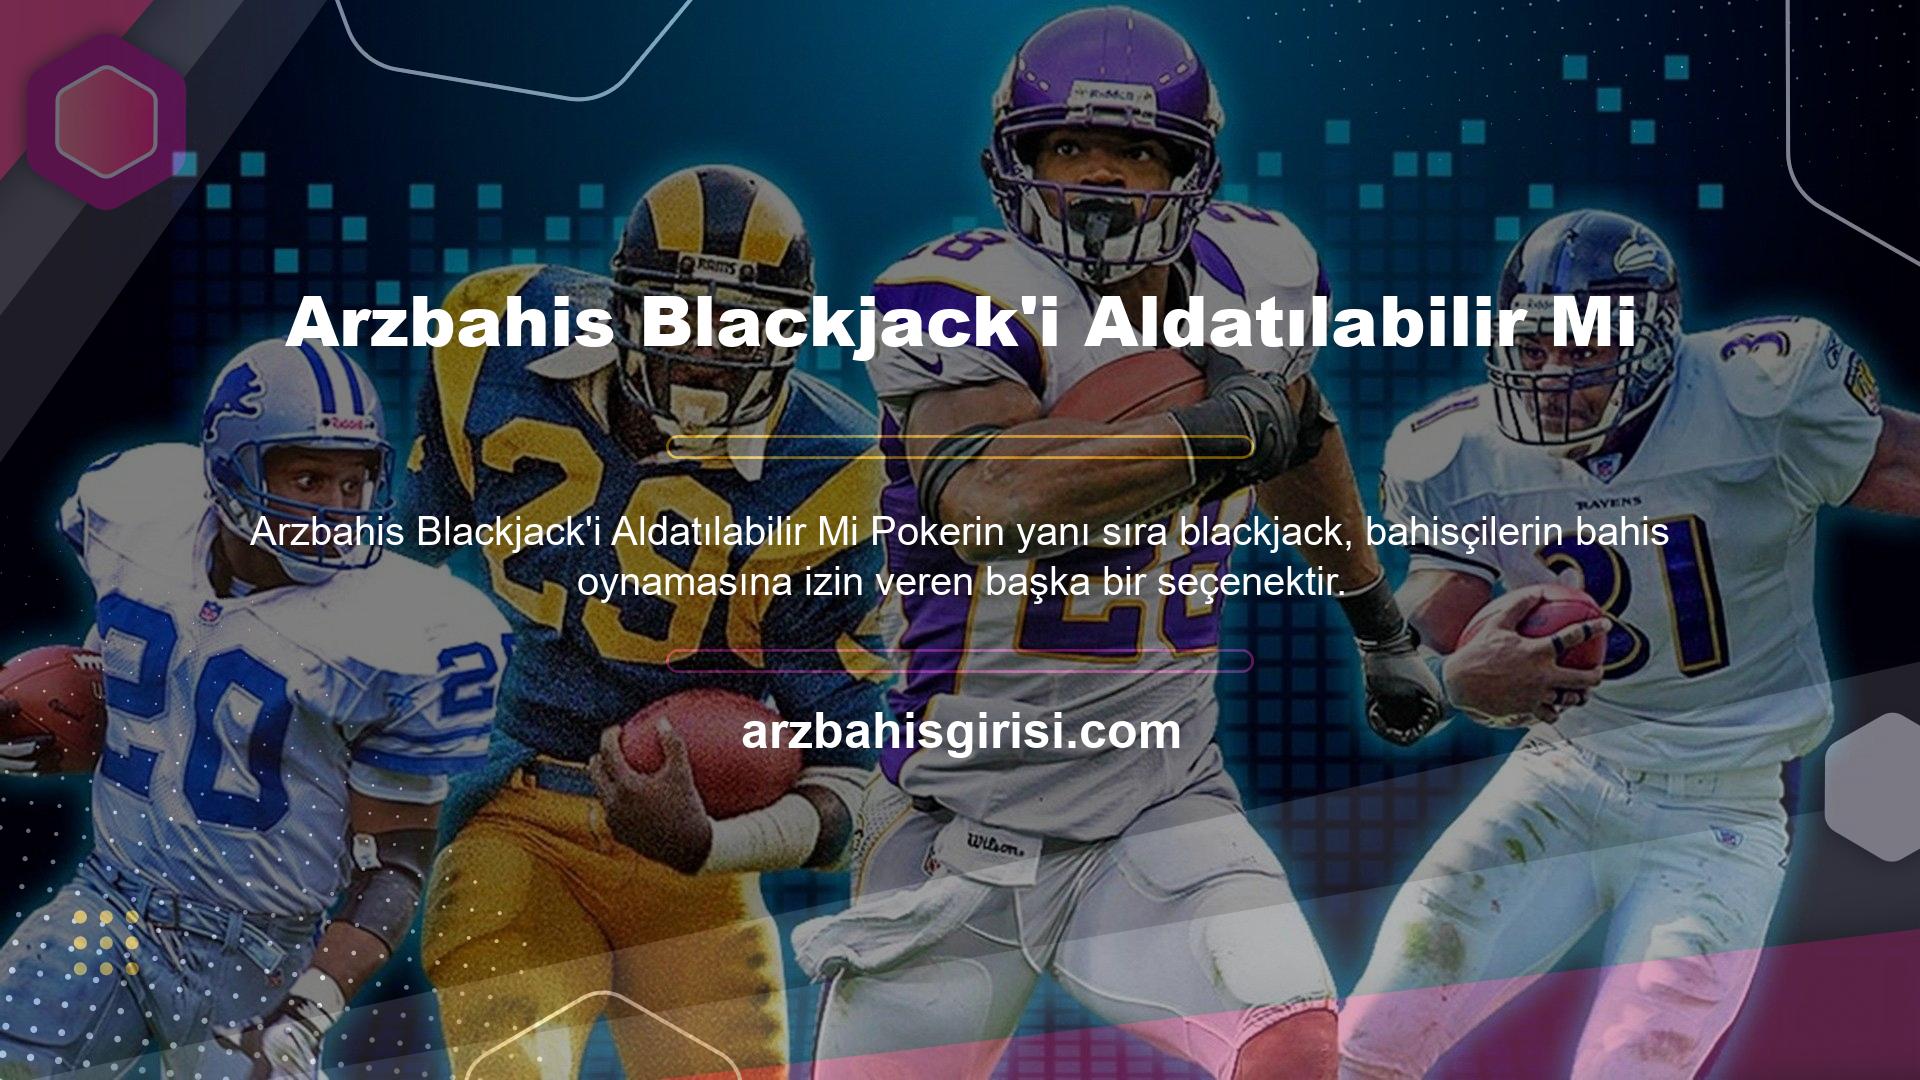 Blackjack casino seçeneği ile çok kısa sürede kazançlı bahisler yapmak isteyen kişilerin aklında Arzbahis blackjack hilecilerinin kandırılıp kandırılamayacağı sorusu gelmektedir